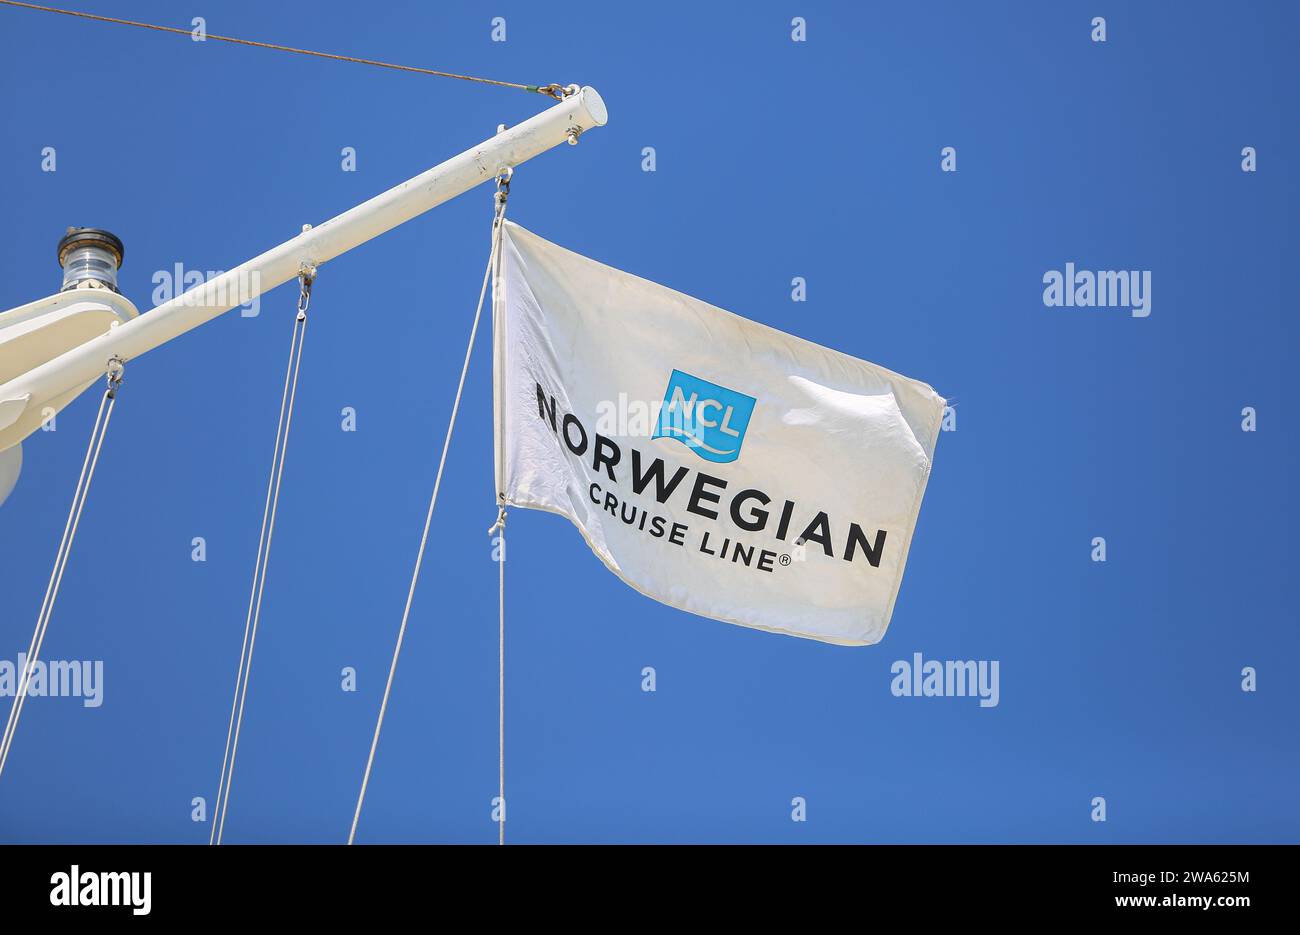 Norwegian Cruise Line logo flag (NCL), le drapeau de la compagnie de croisières basée à Miami vole sur un mât de navire de croisière avec feu de navigation, fond de ciel bleu Banque D'Images